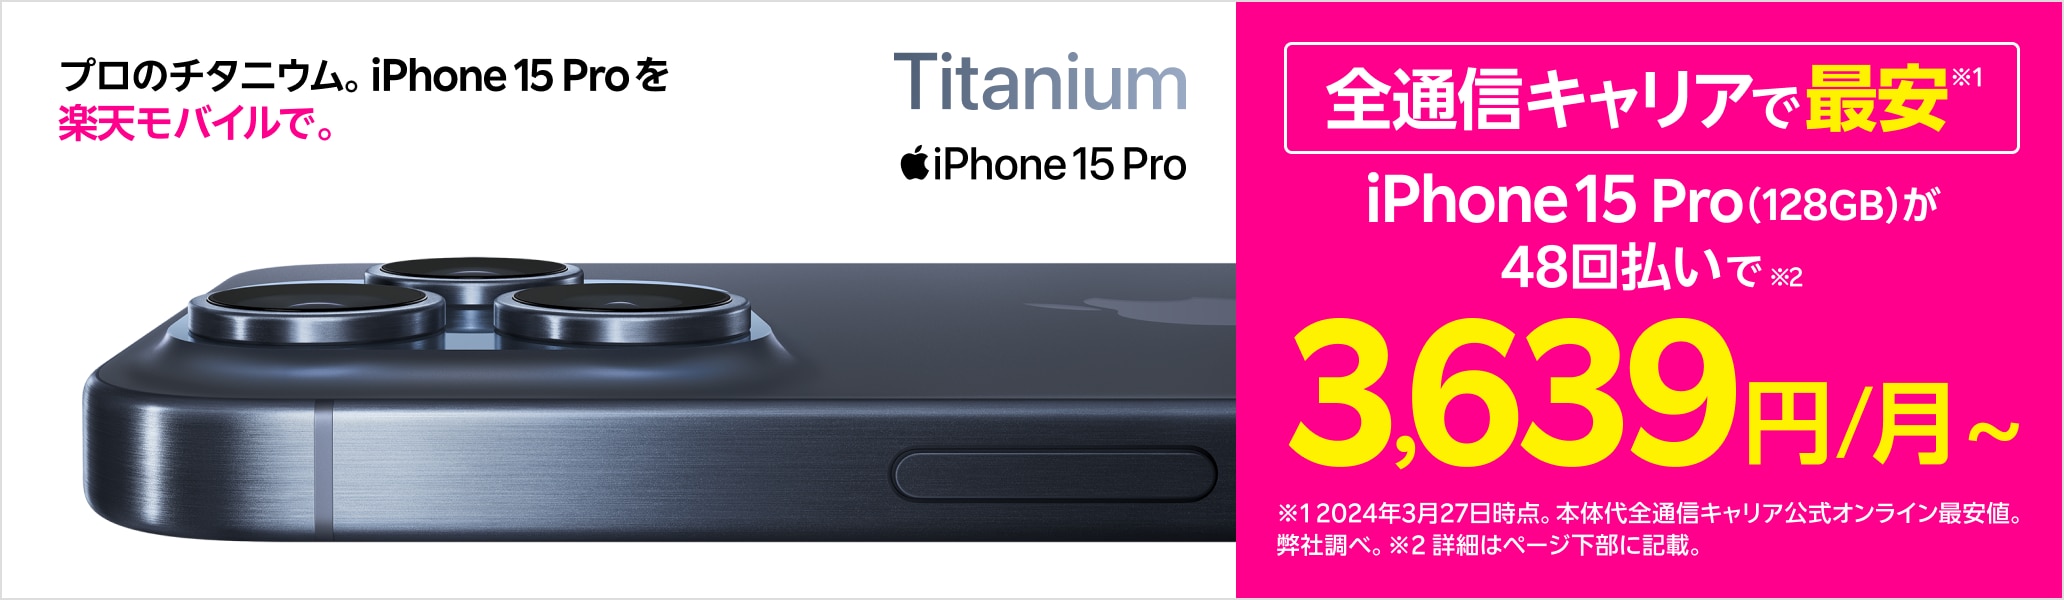 iPhone 15 Pro プロのチタニウム。iPhone 15 Proを楽天モバイルで。全通信キャリアで最安※ ※2024年3月27日時点。弊社調べ